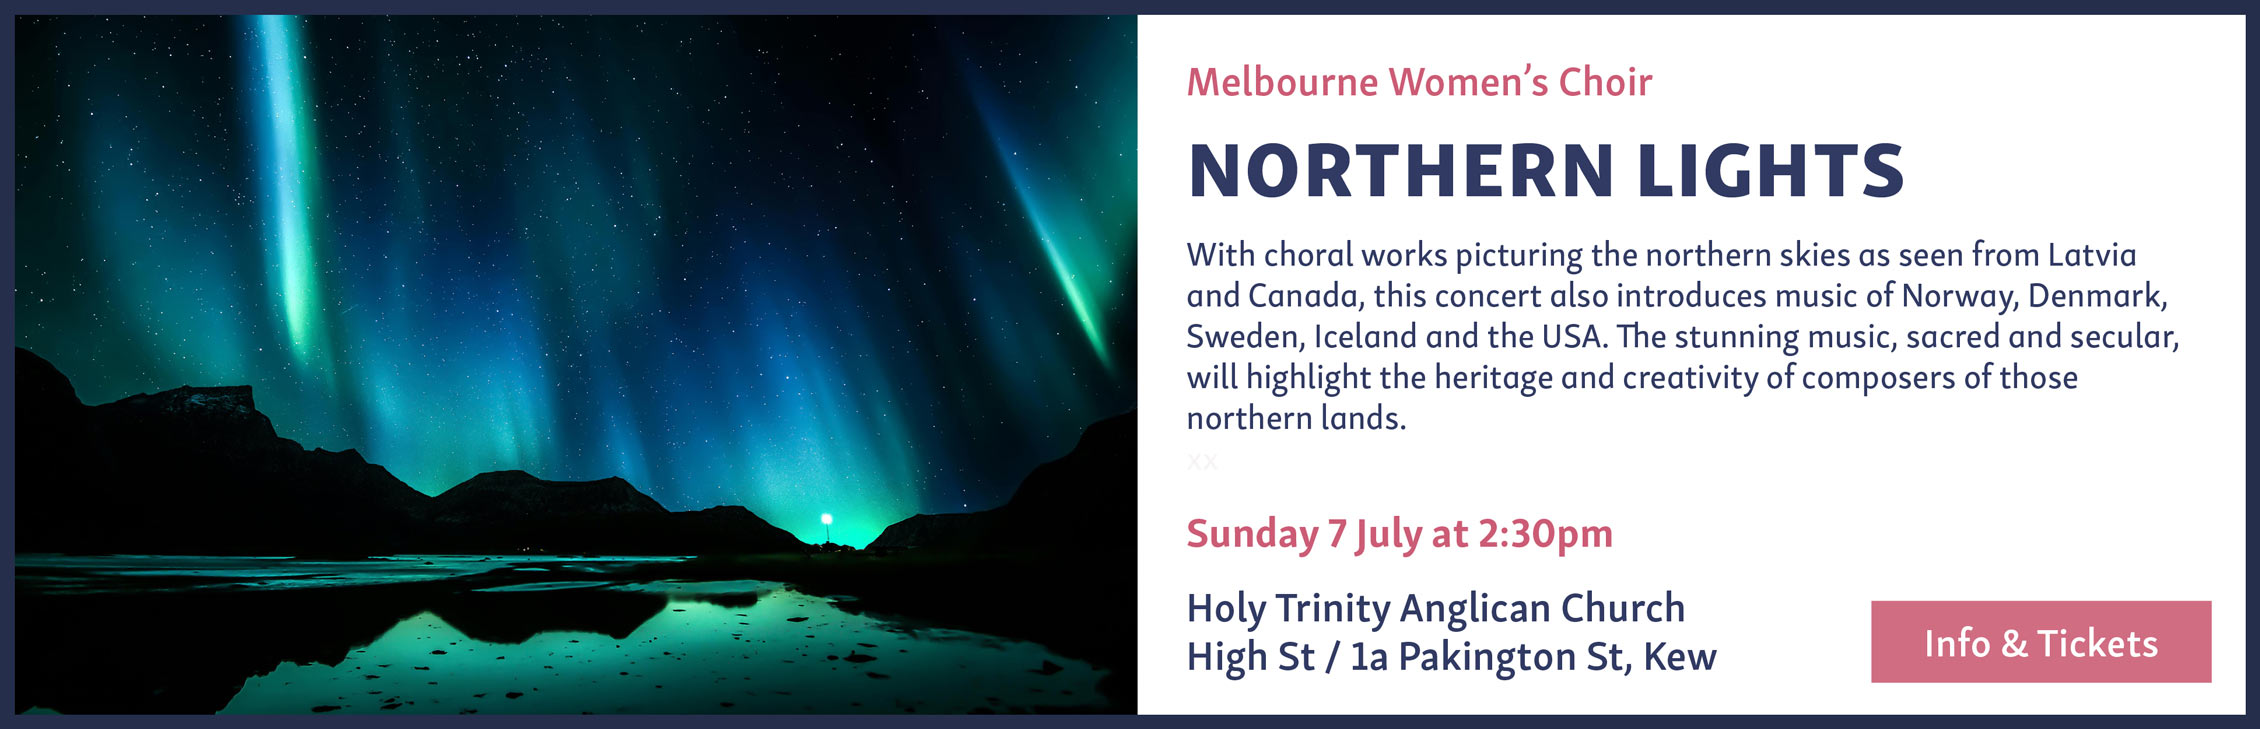 Northern lights choral concert